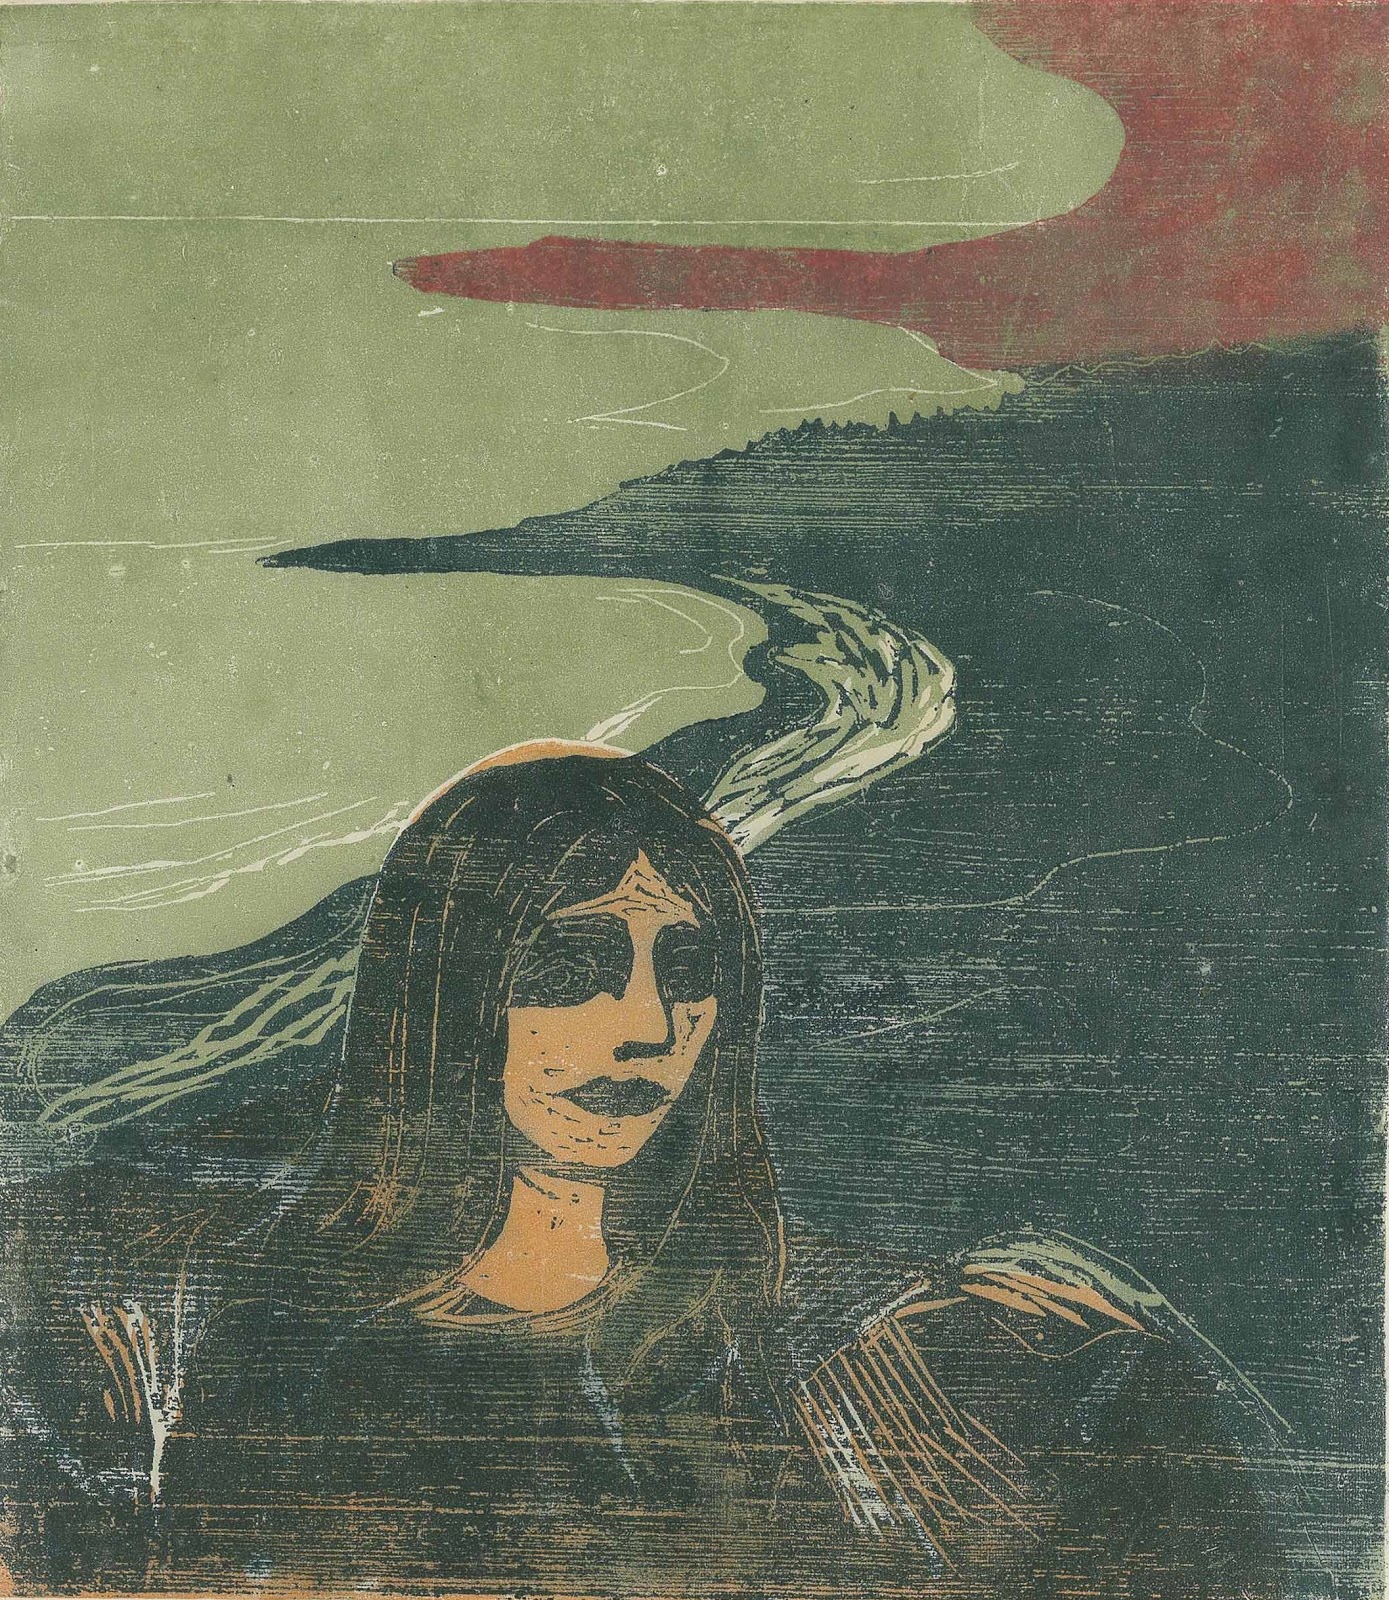 Edvard+Munch-1863-1944 (88).jpg